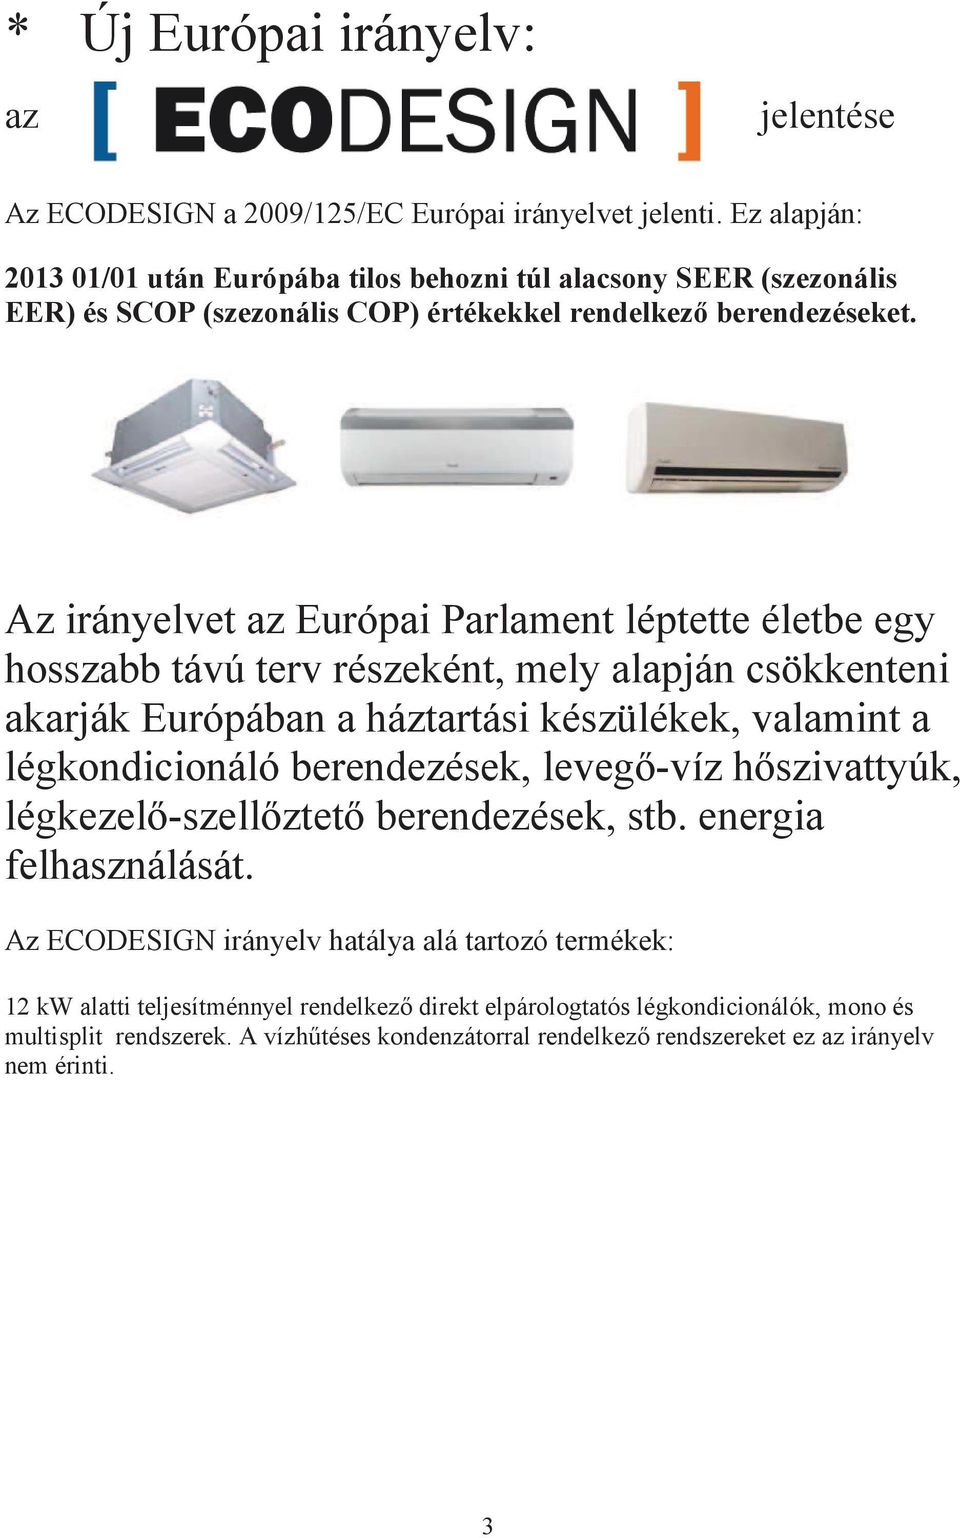 Az irányelvet az Európai Parlament léptette életbe egy hosszabb távú terv részeként, mely alapján csökkenteni akarják Európában a háztartási készülékek, valamint a légkondicionáló